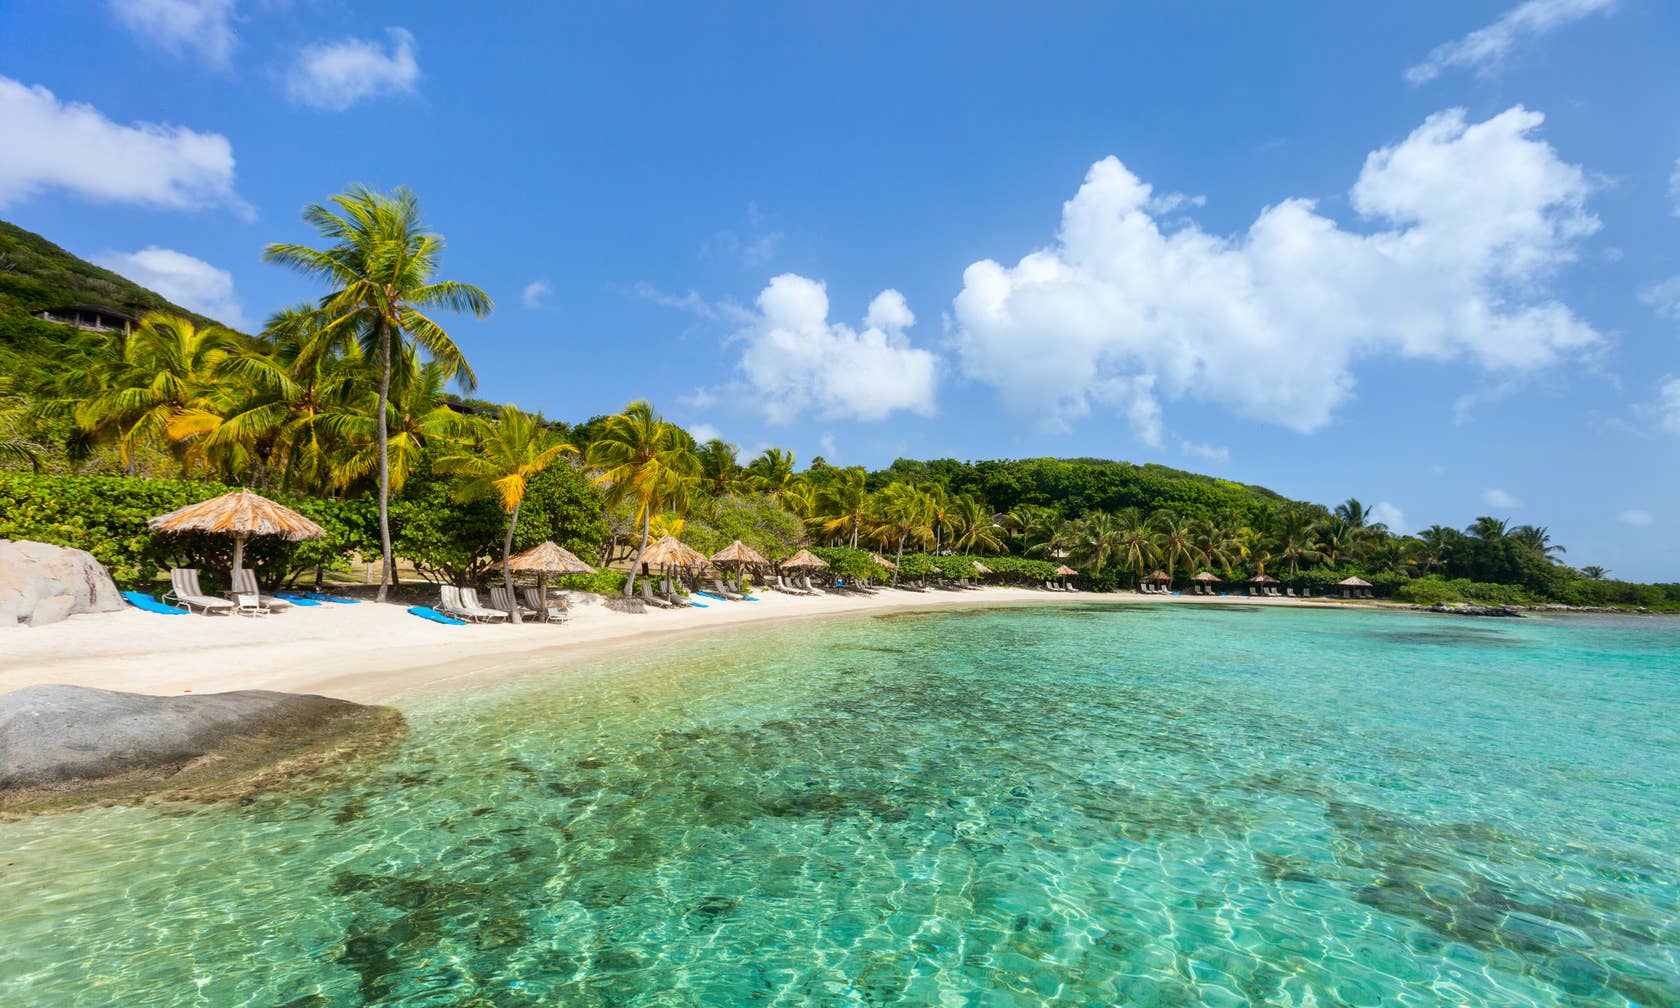 Affitti per le vacanze a Caraibi